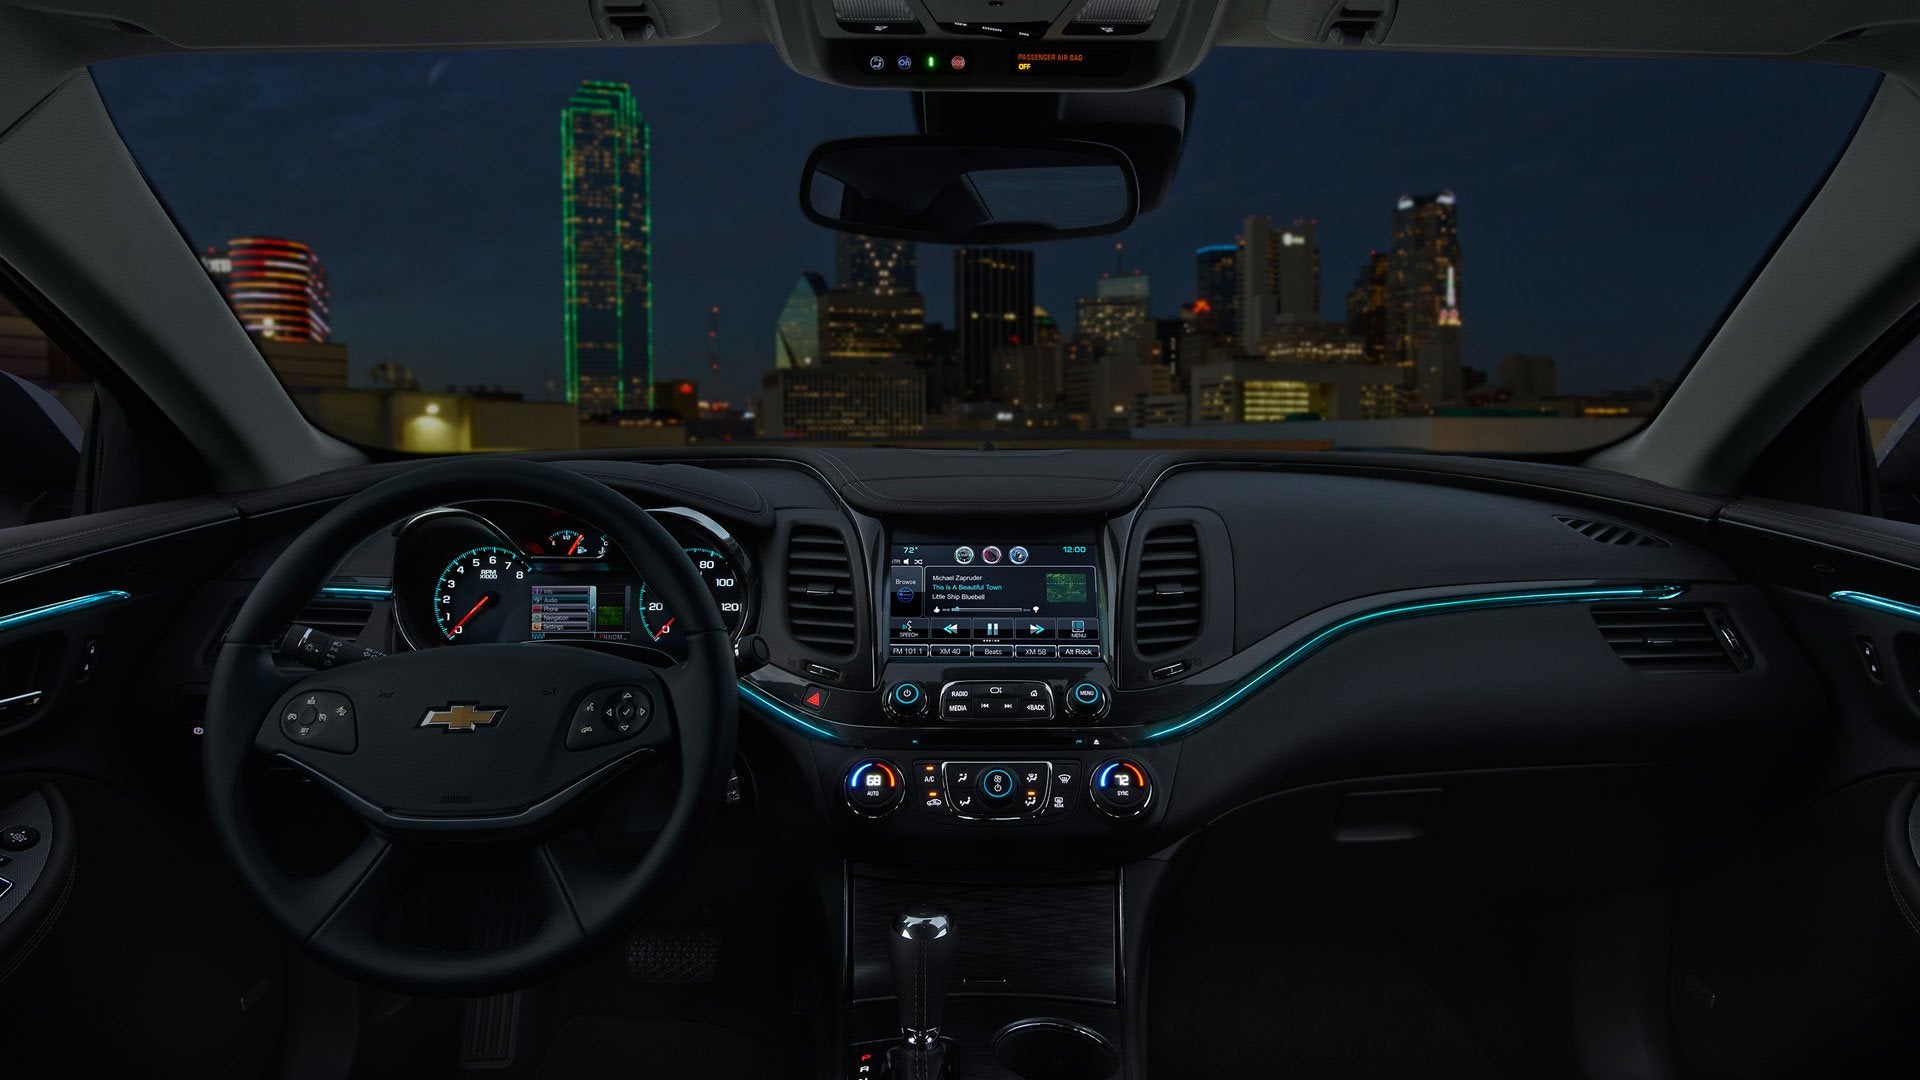 2016 Chevy Impala vs 2016 Honda Accord Interior